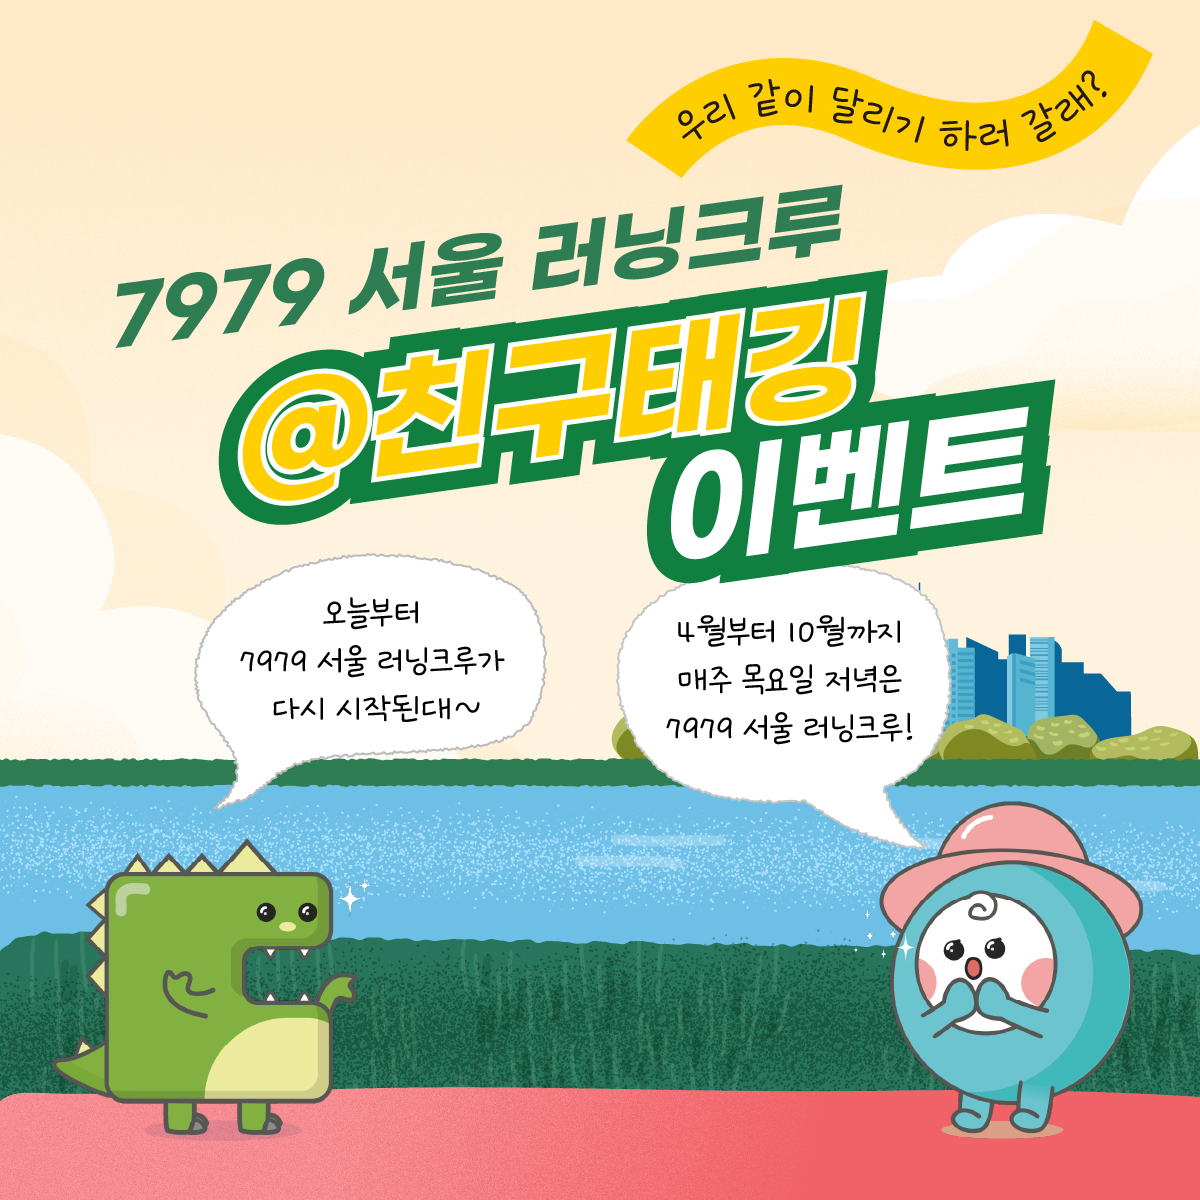 7979 서울 러닝크루 이벤트